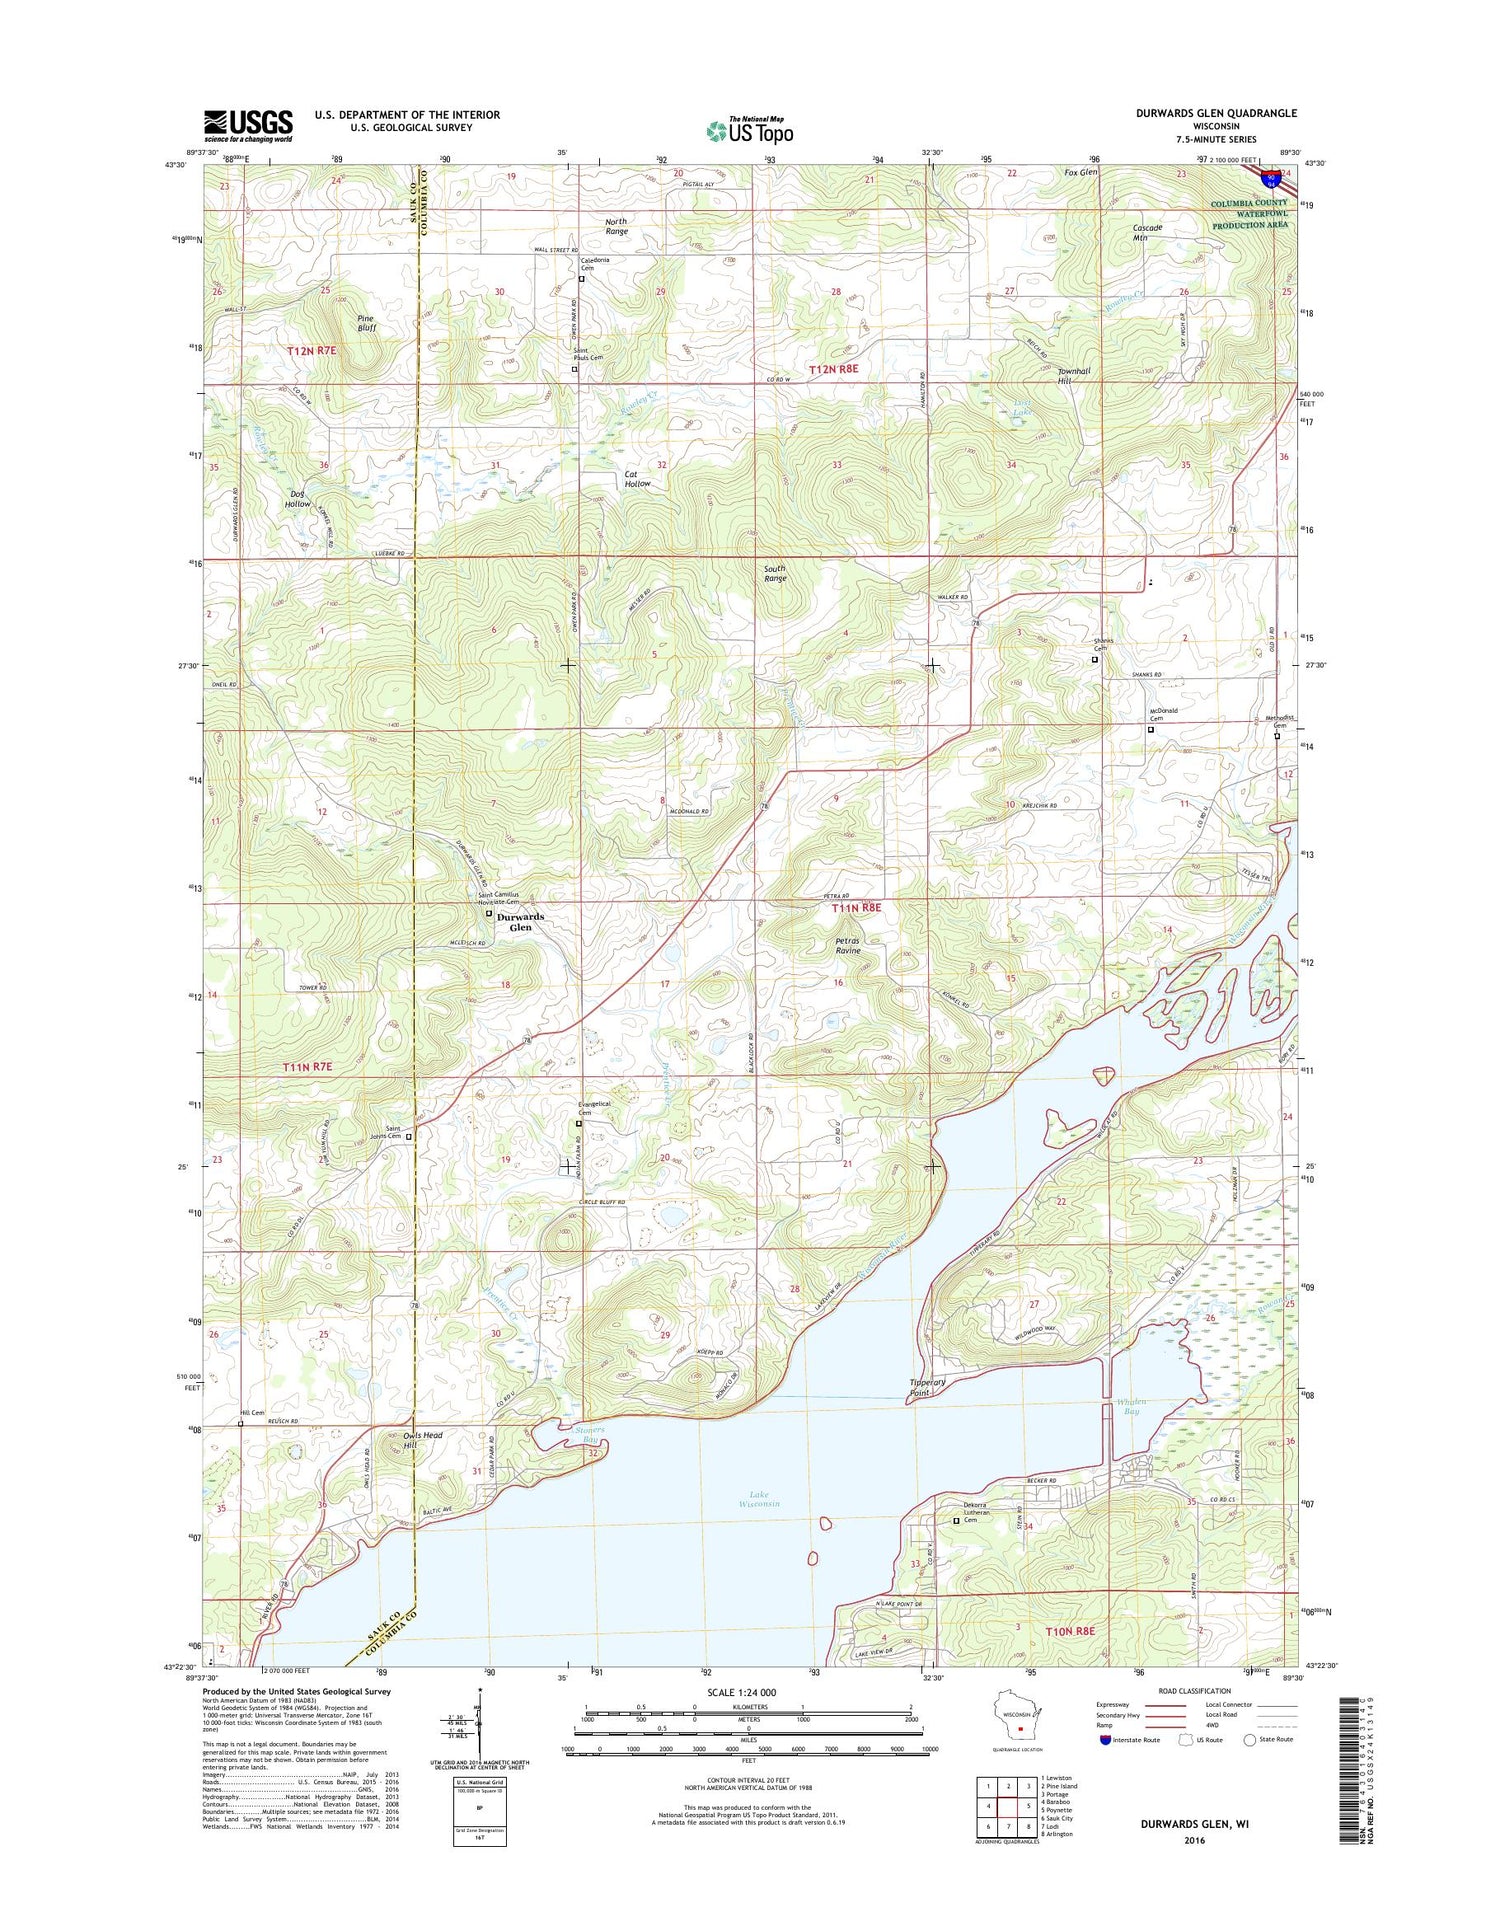 Durwards Glen Wisconsin US Topo Map Image